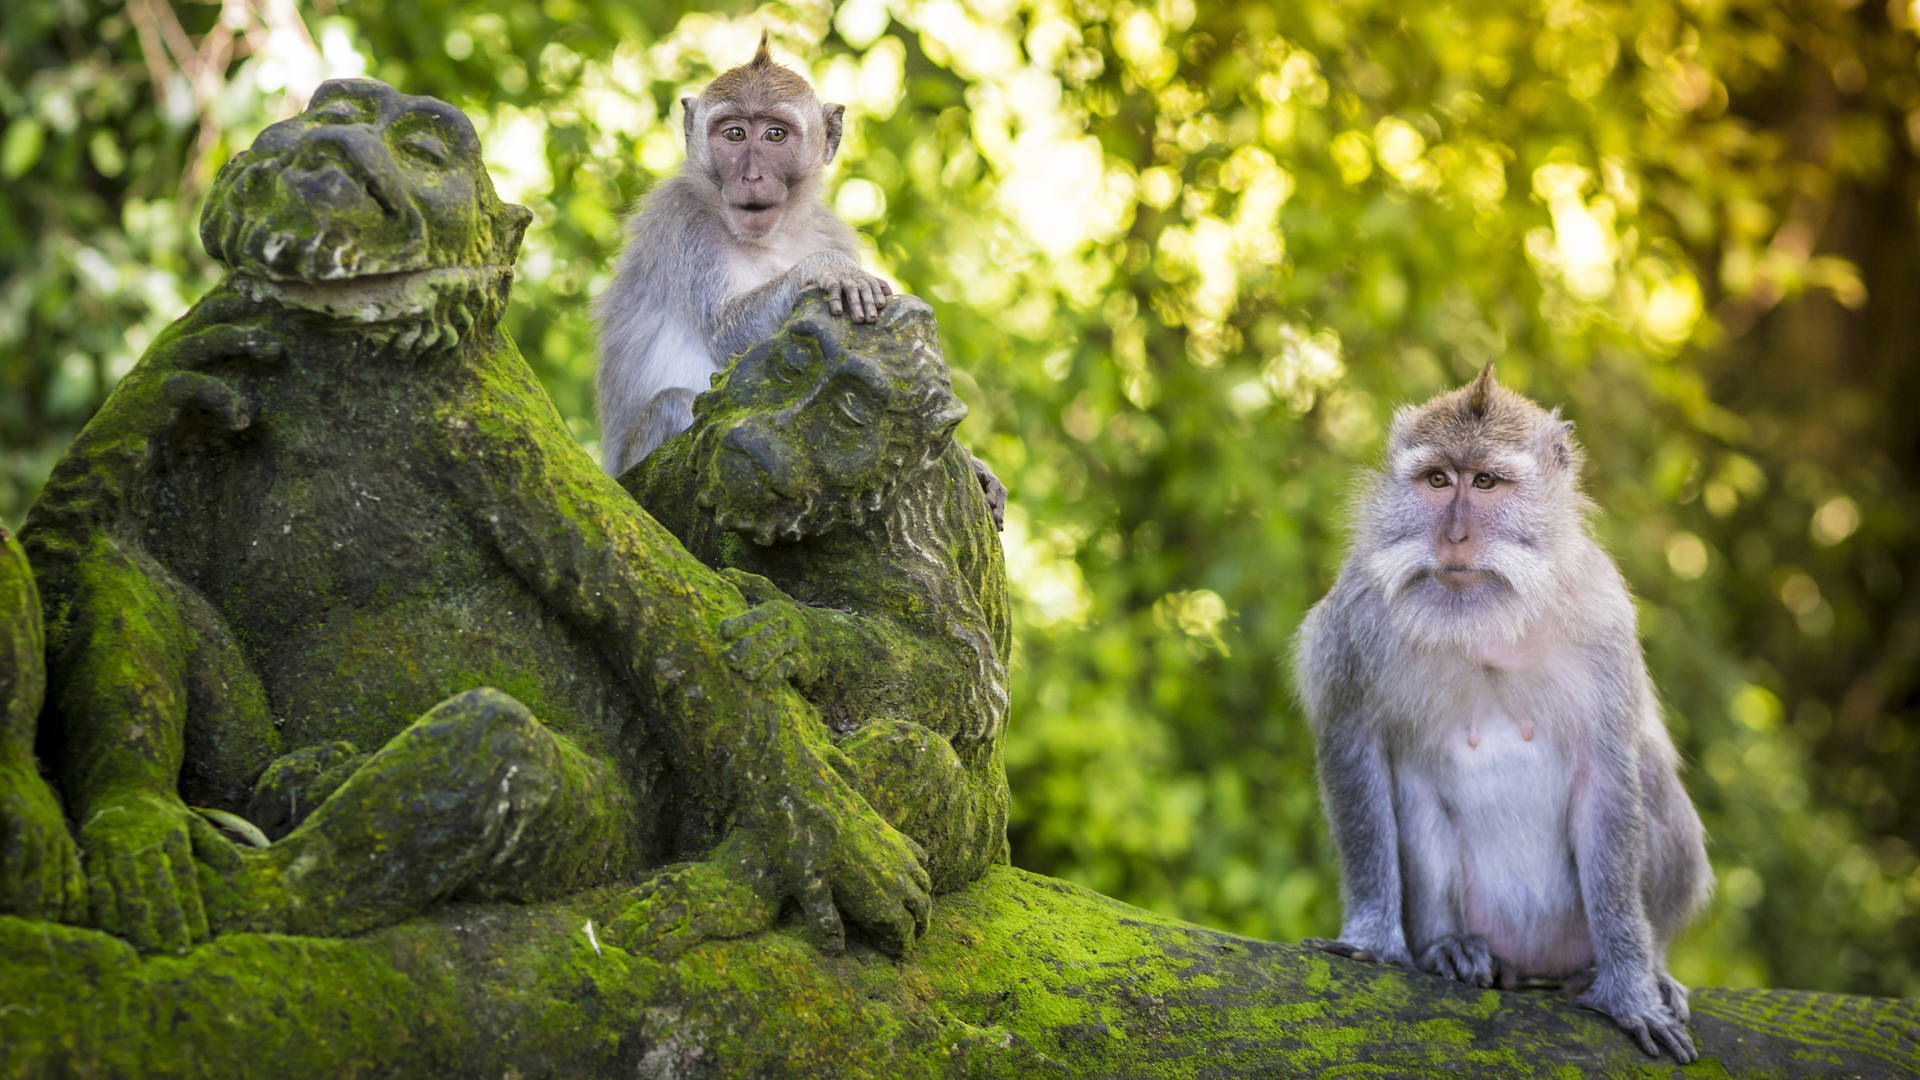 Monkeys in Bali's Monkey Forest